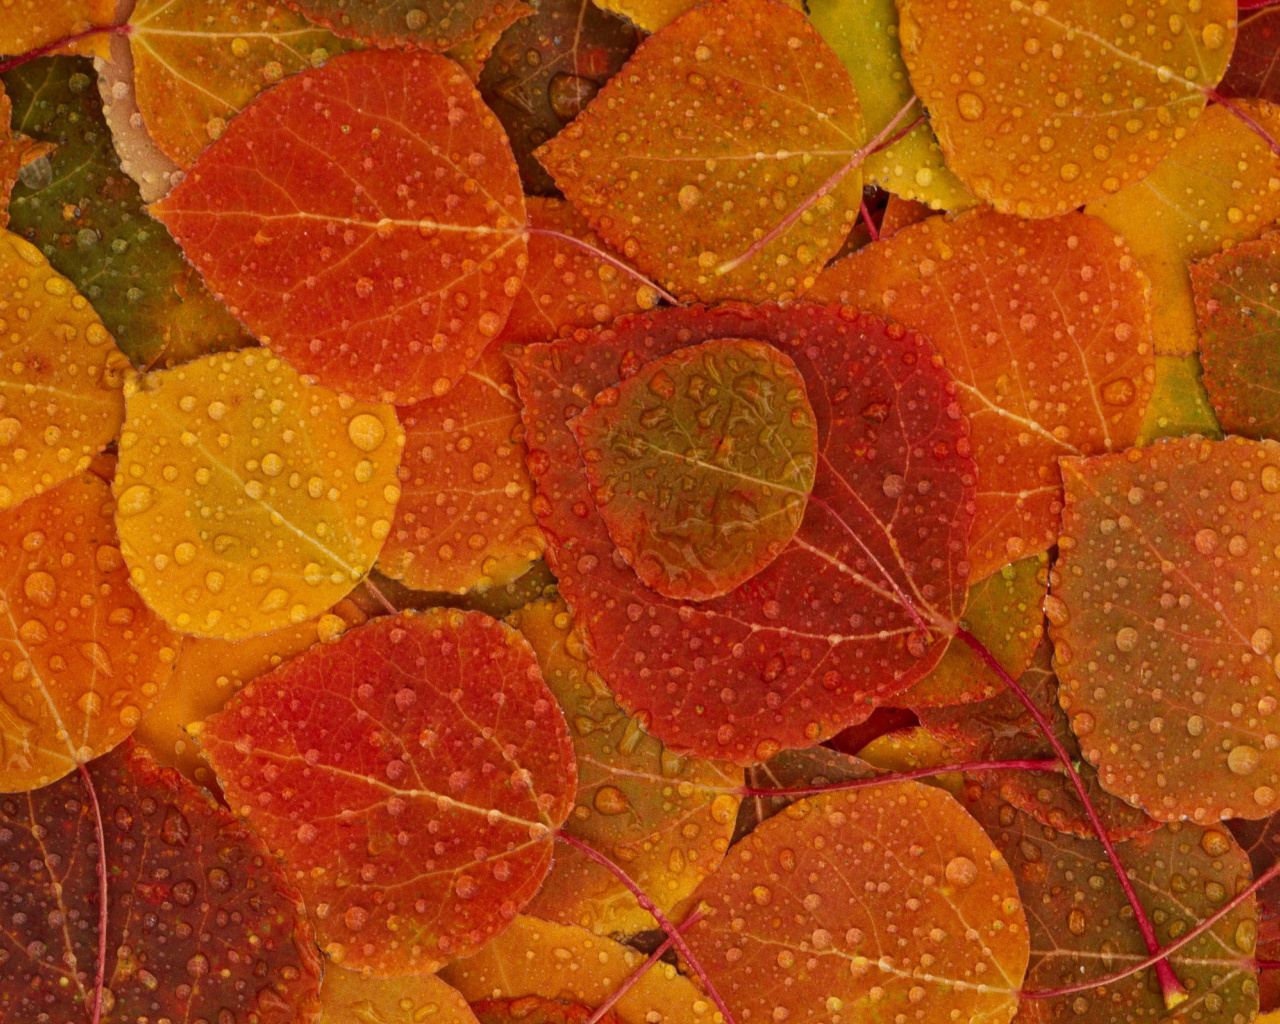 Das Autumn leaves with rain drops Wallpaper 1280x1024